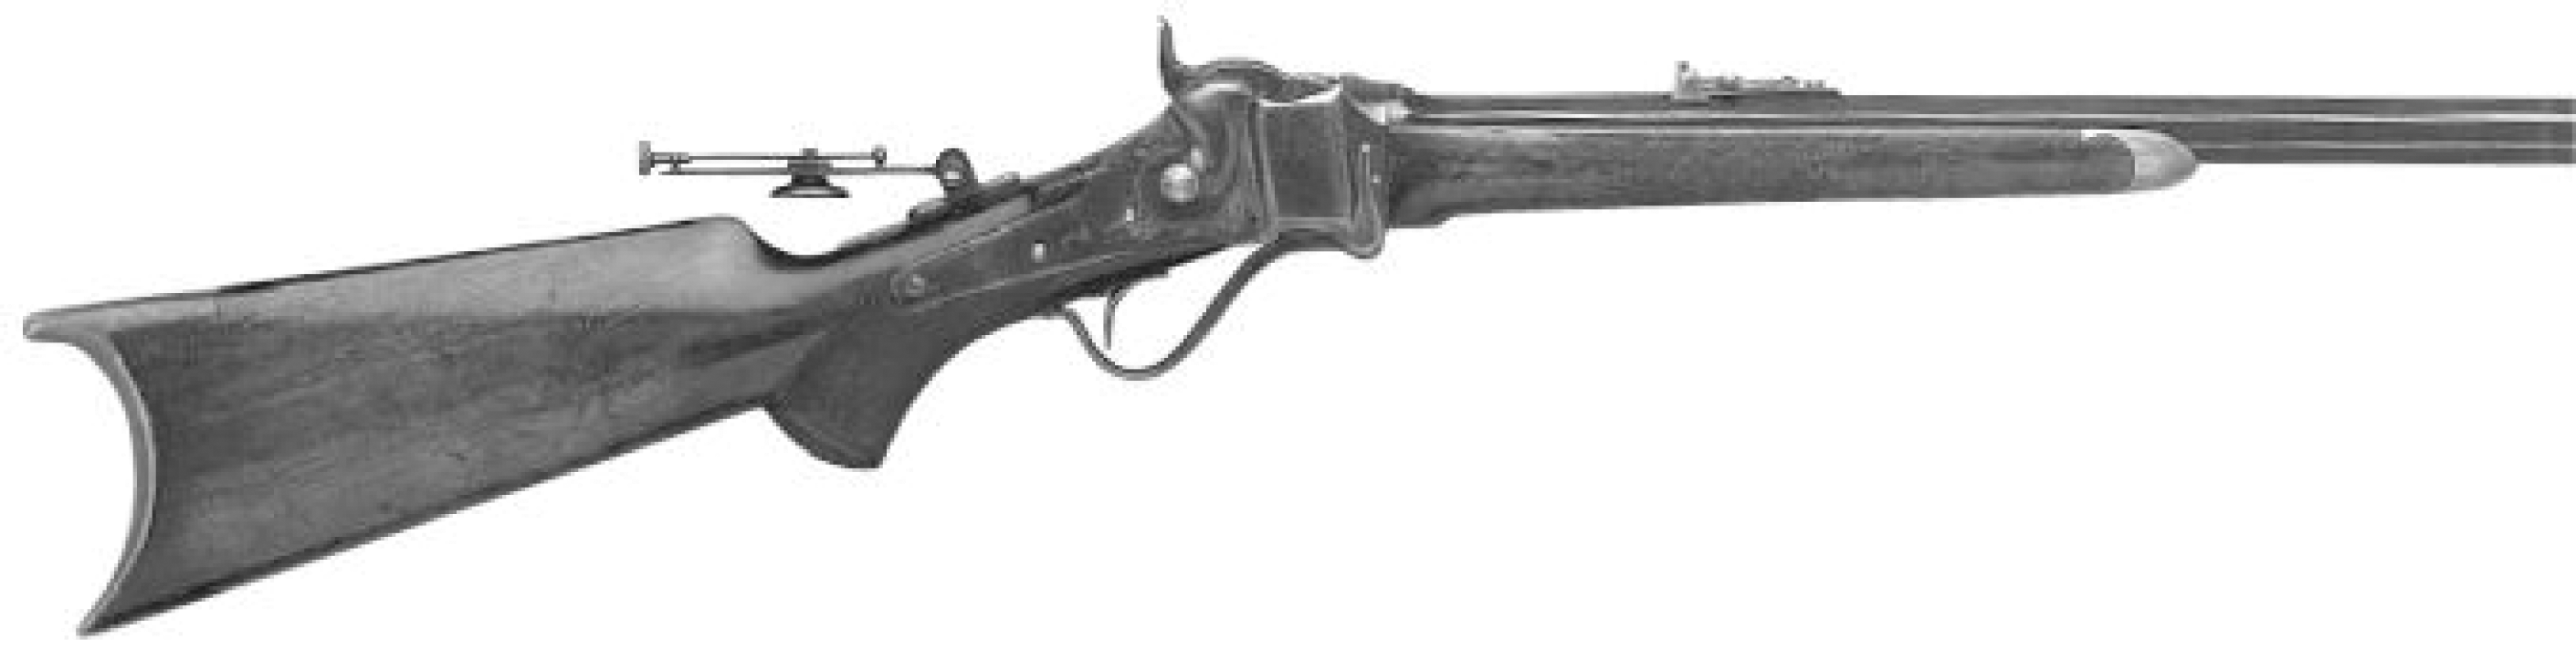 Mid-Range Rifle